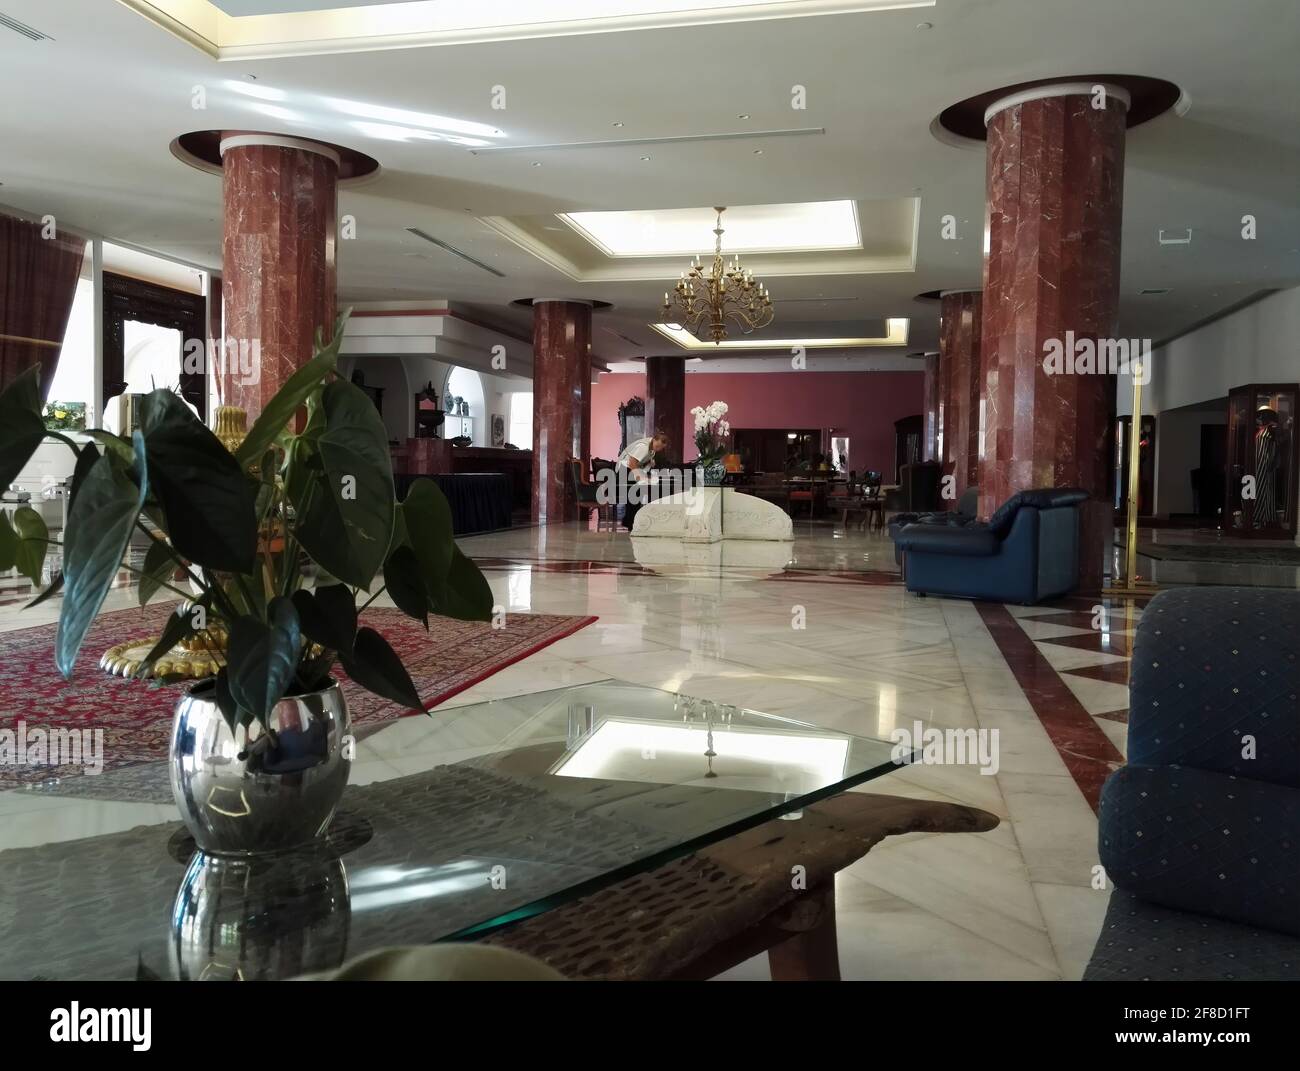 Kreta, Grèce - 08 octobre 2017 : intérieur d'un hôtel nettoyé au hasard avec piliers, plante sur vase, lustre et une personne non identifiée qui nettoie le t Banque D'Images